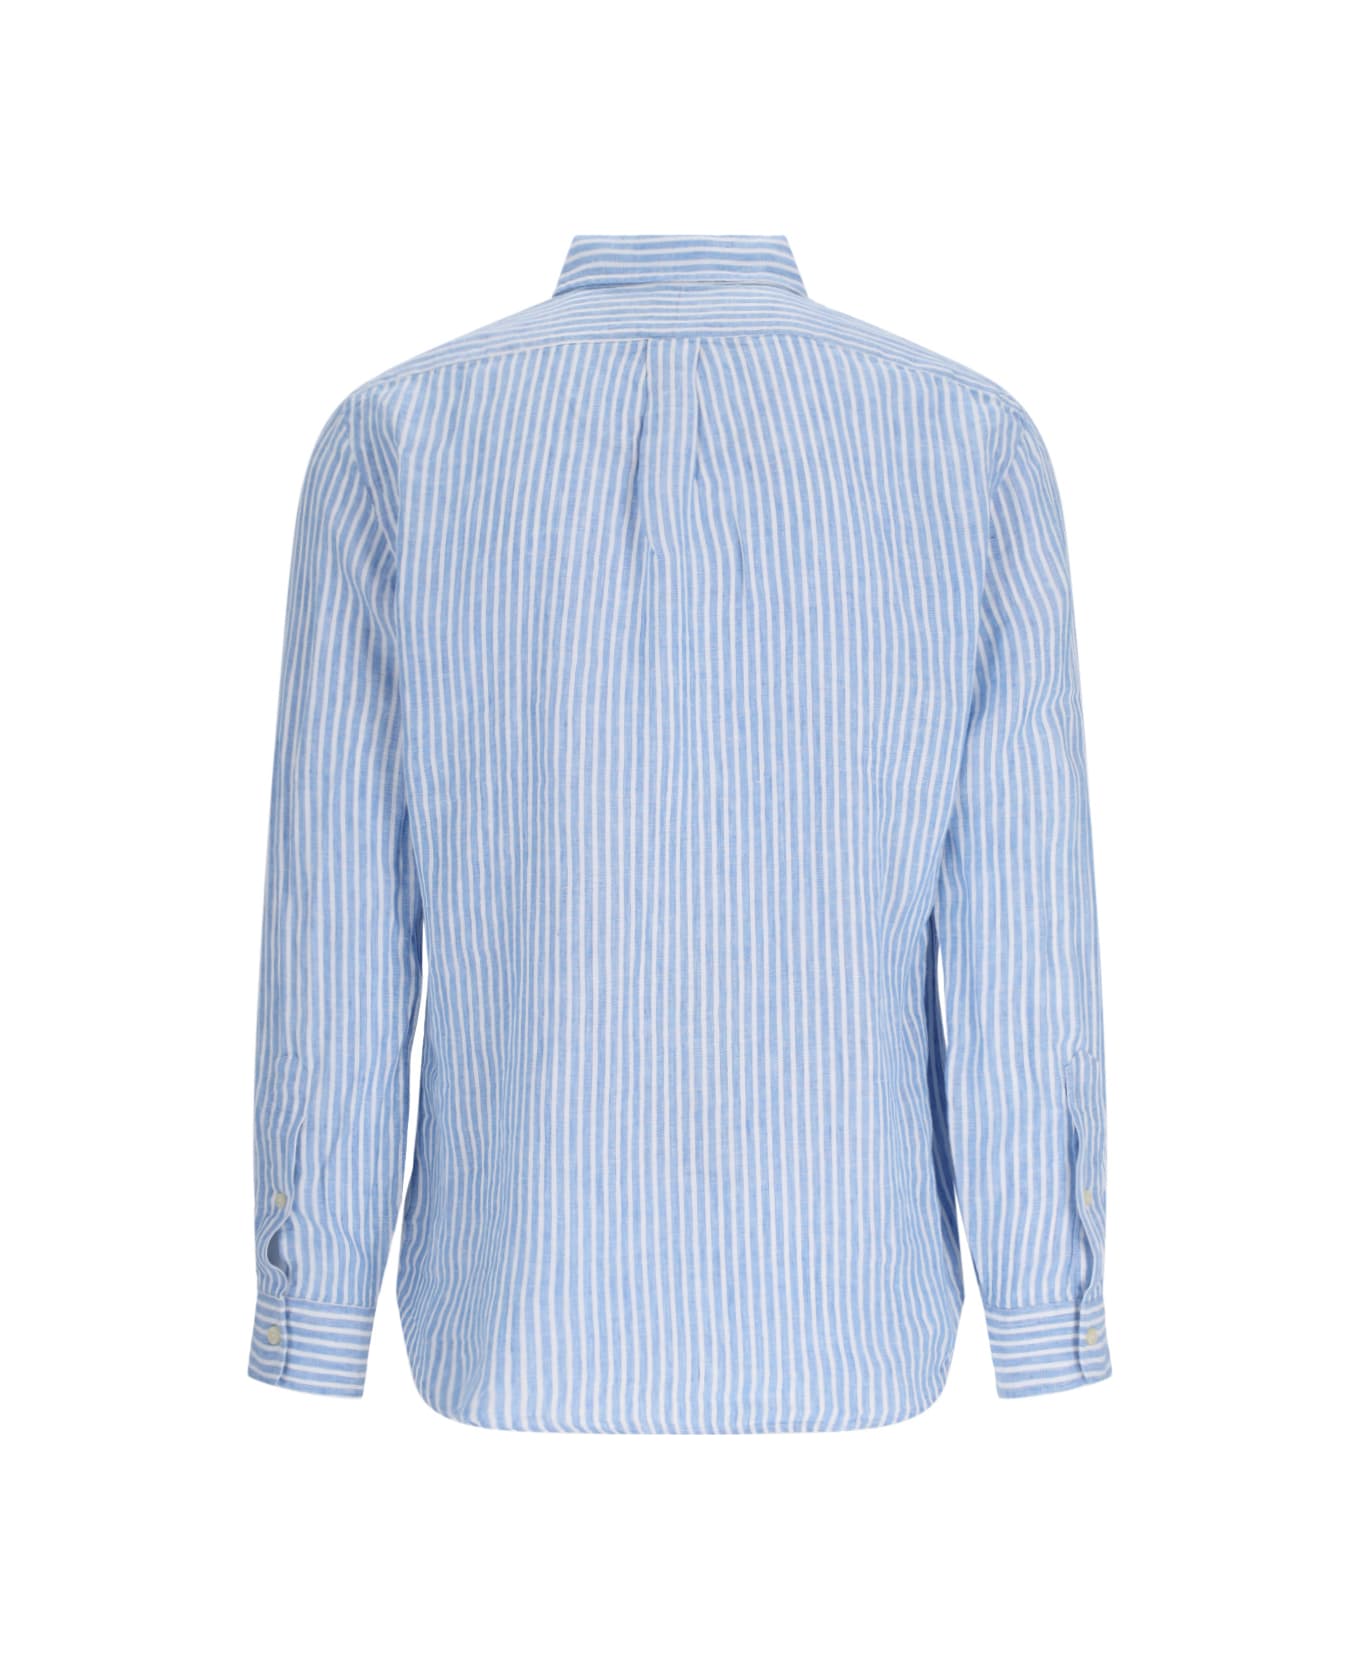 Ralph Lauren Logo Shirt - 5137A BLUE/WHITE